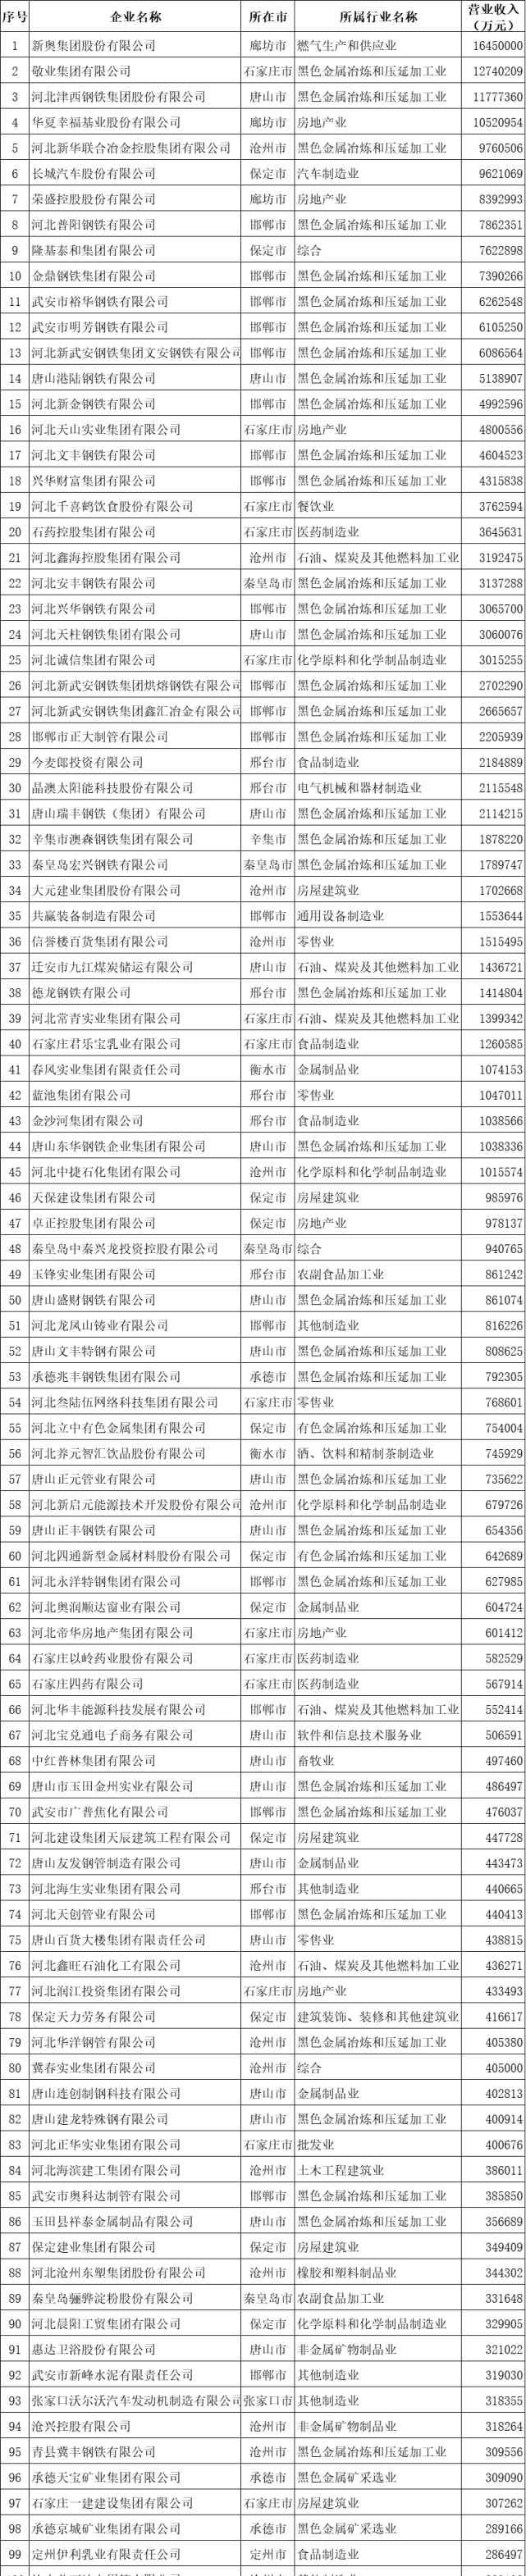 河北新奥集团 2020河北省民营企业100强榜单出炉